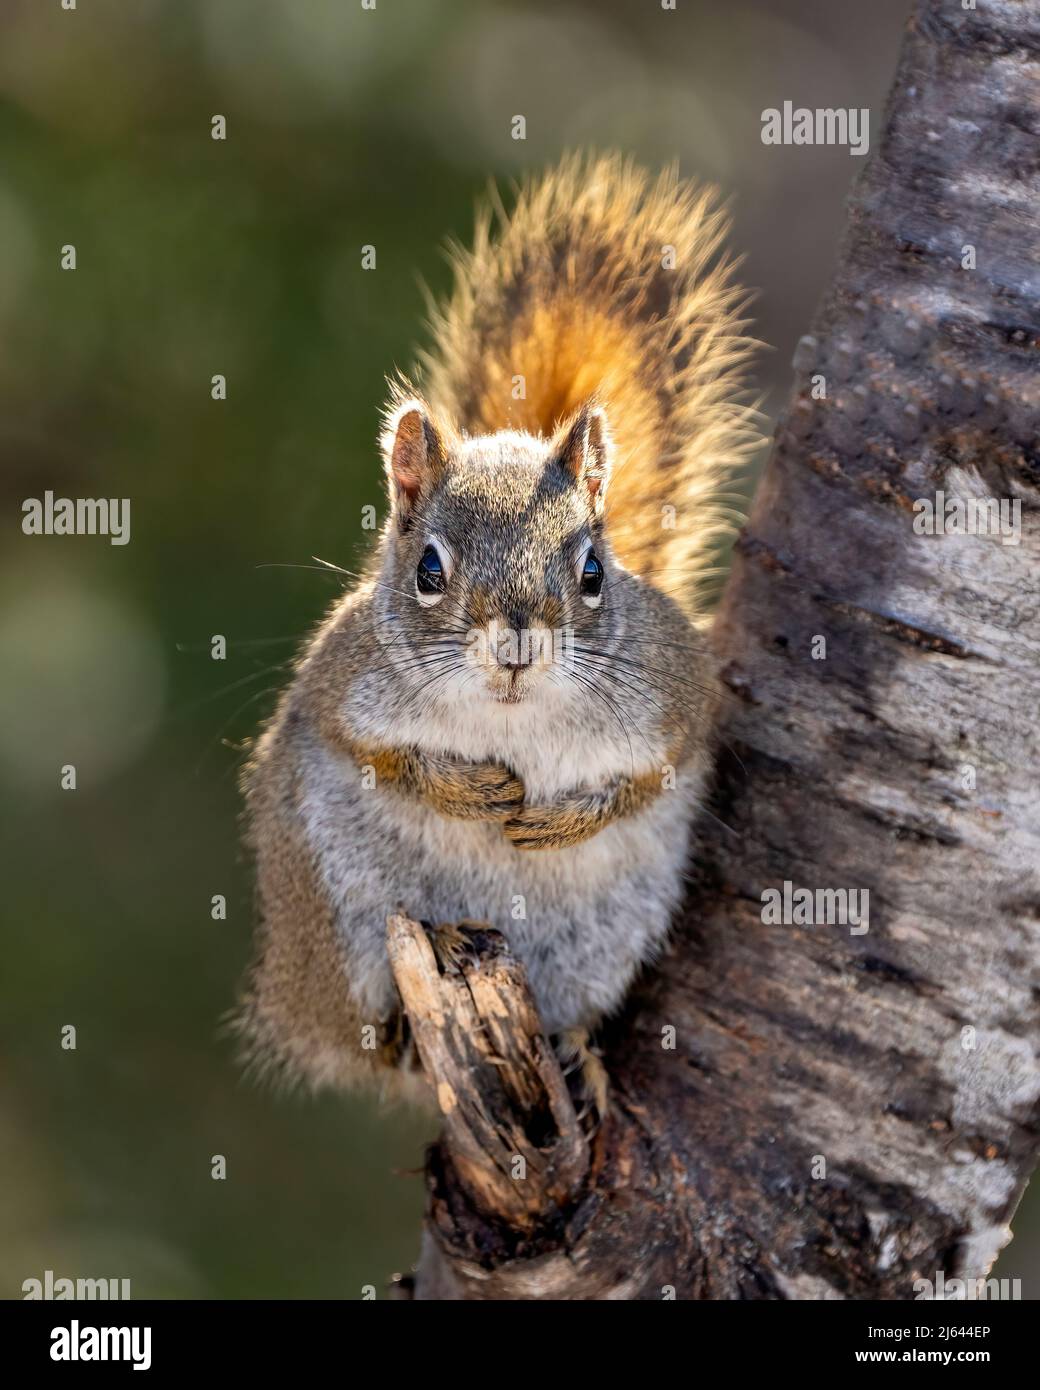 Das Eichhörnchen sitzt auf einem Ast mit Sonnenlicht auf seinem buschigen Schwanz in seiner Umgebung und Umgebung und zeigt sein braunes Fell und seinen buschigen Schwanz. Stockfoto